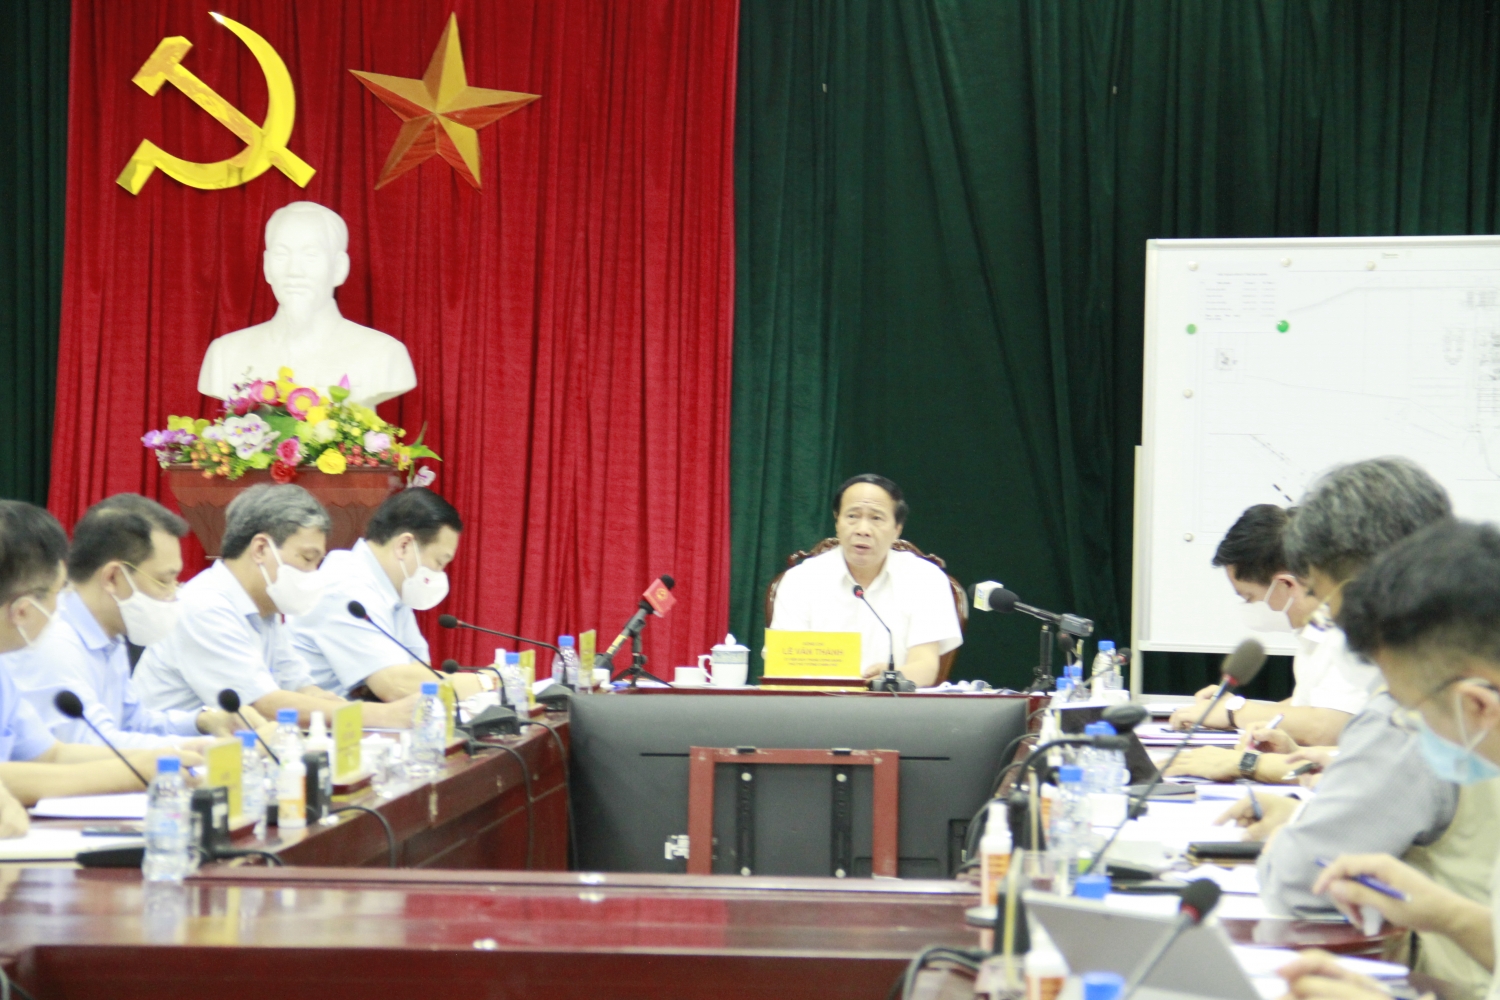 Phó Thủ tướng Lê Văn Thành: Tôi sẽ sát cánh cùng các đồng chí, không để các đồng chí làm một mình, chịu trách nhiệm một mình